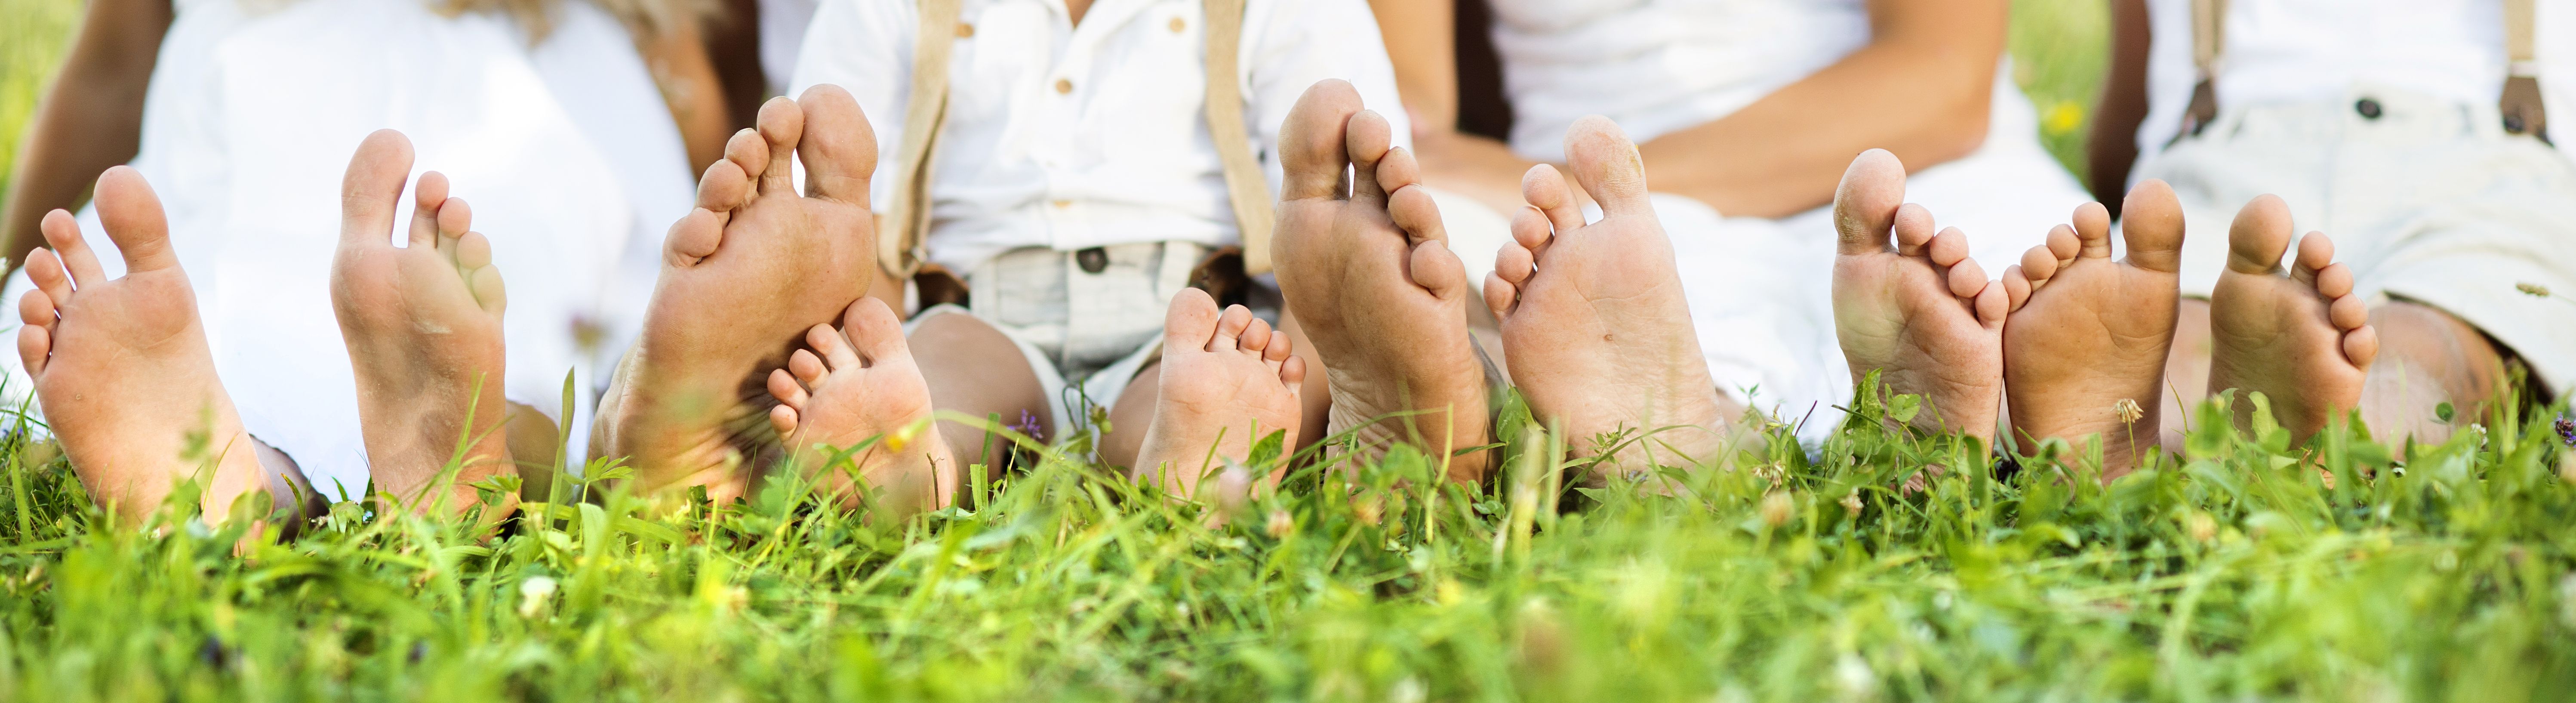 Грибок ног у детей: симптомы заболевания